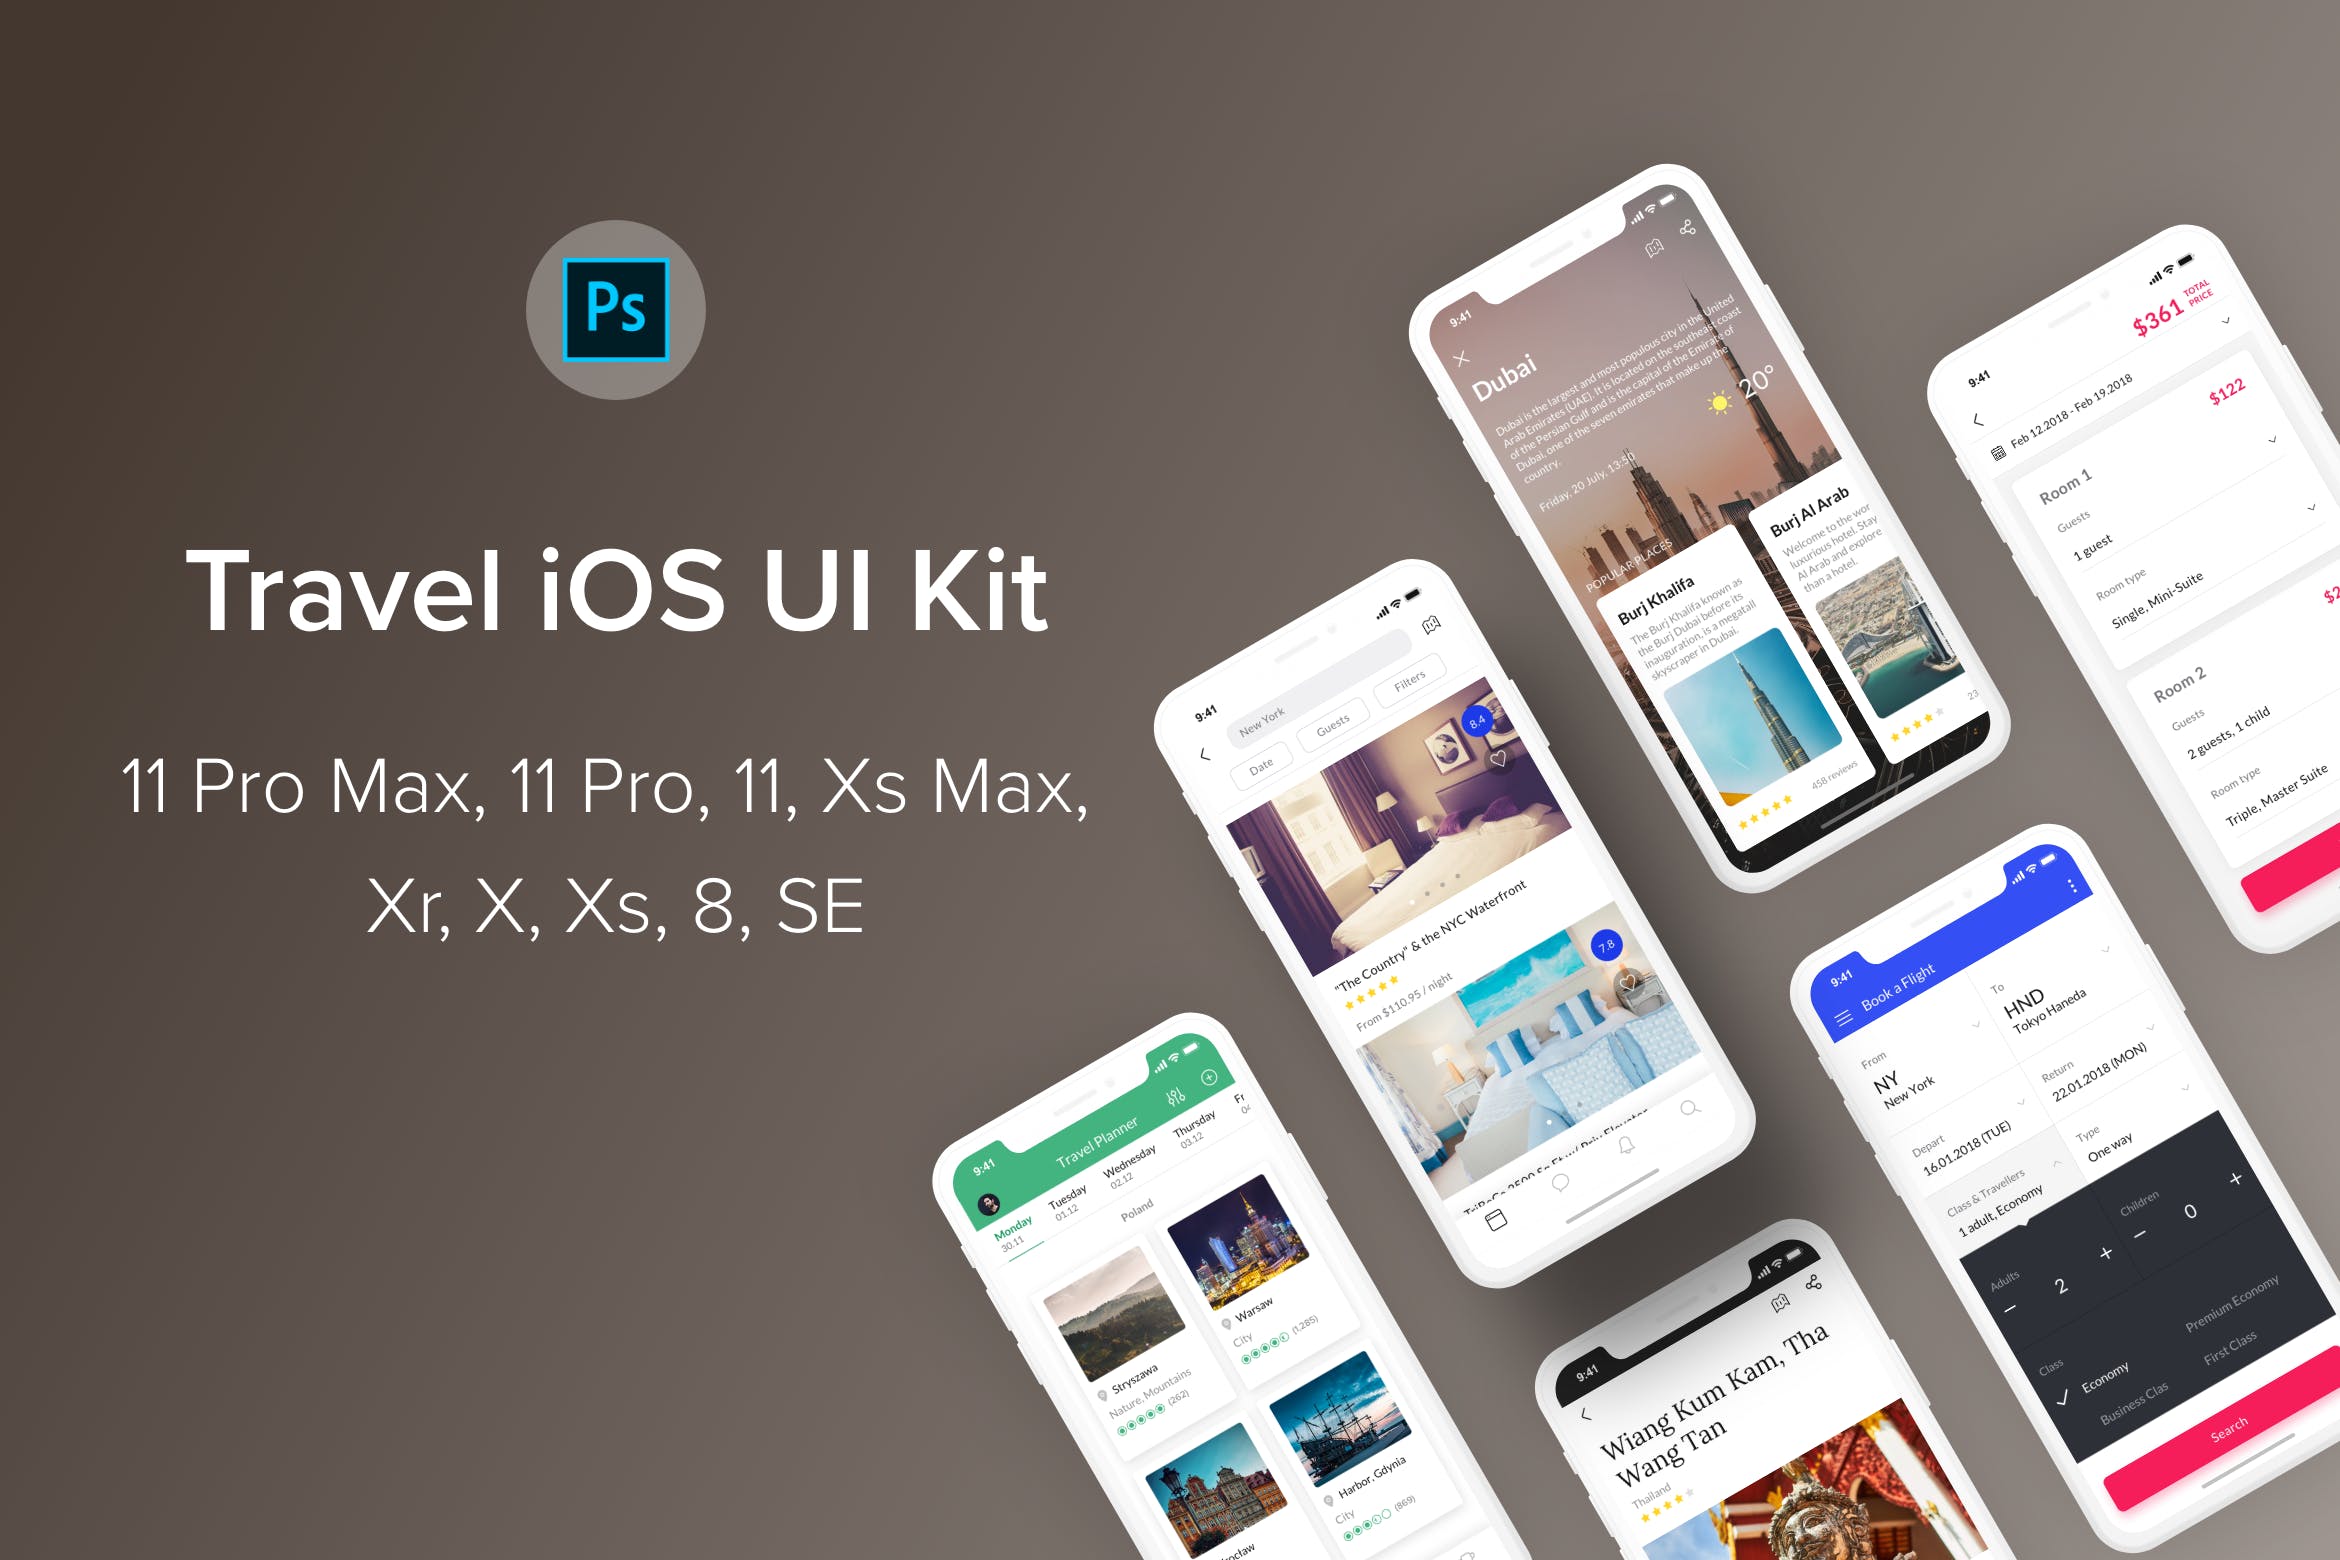 旅游主题iOS应用UI设计第一素材精选套件PSD模板 Travel iOS UI Kit (Photoshop)插图